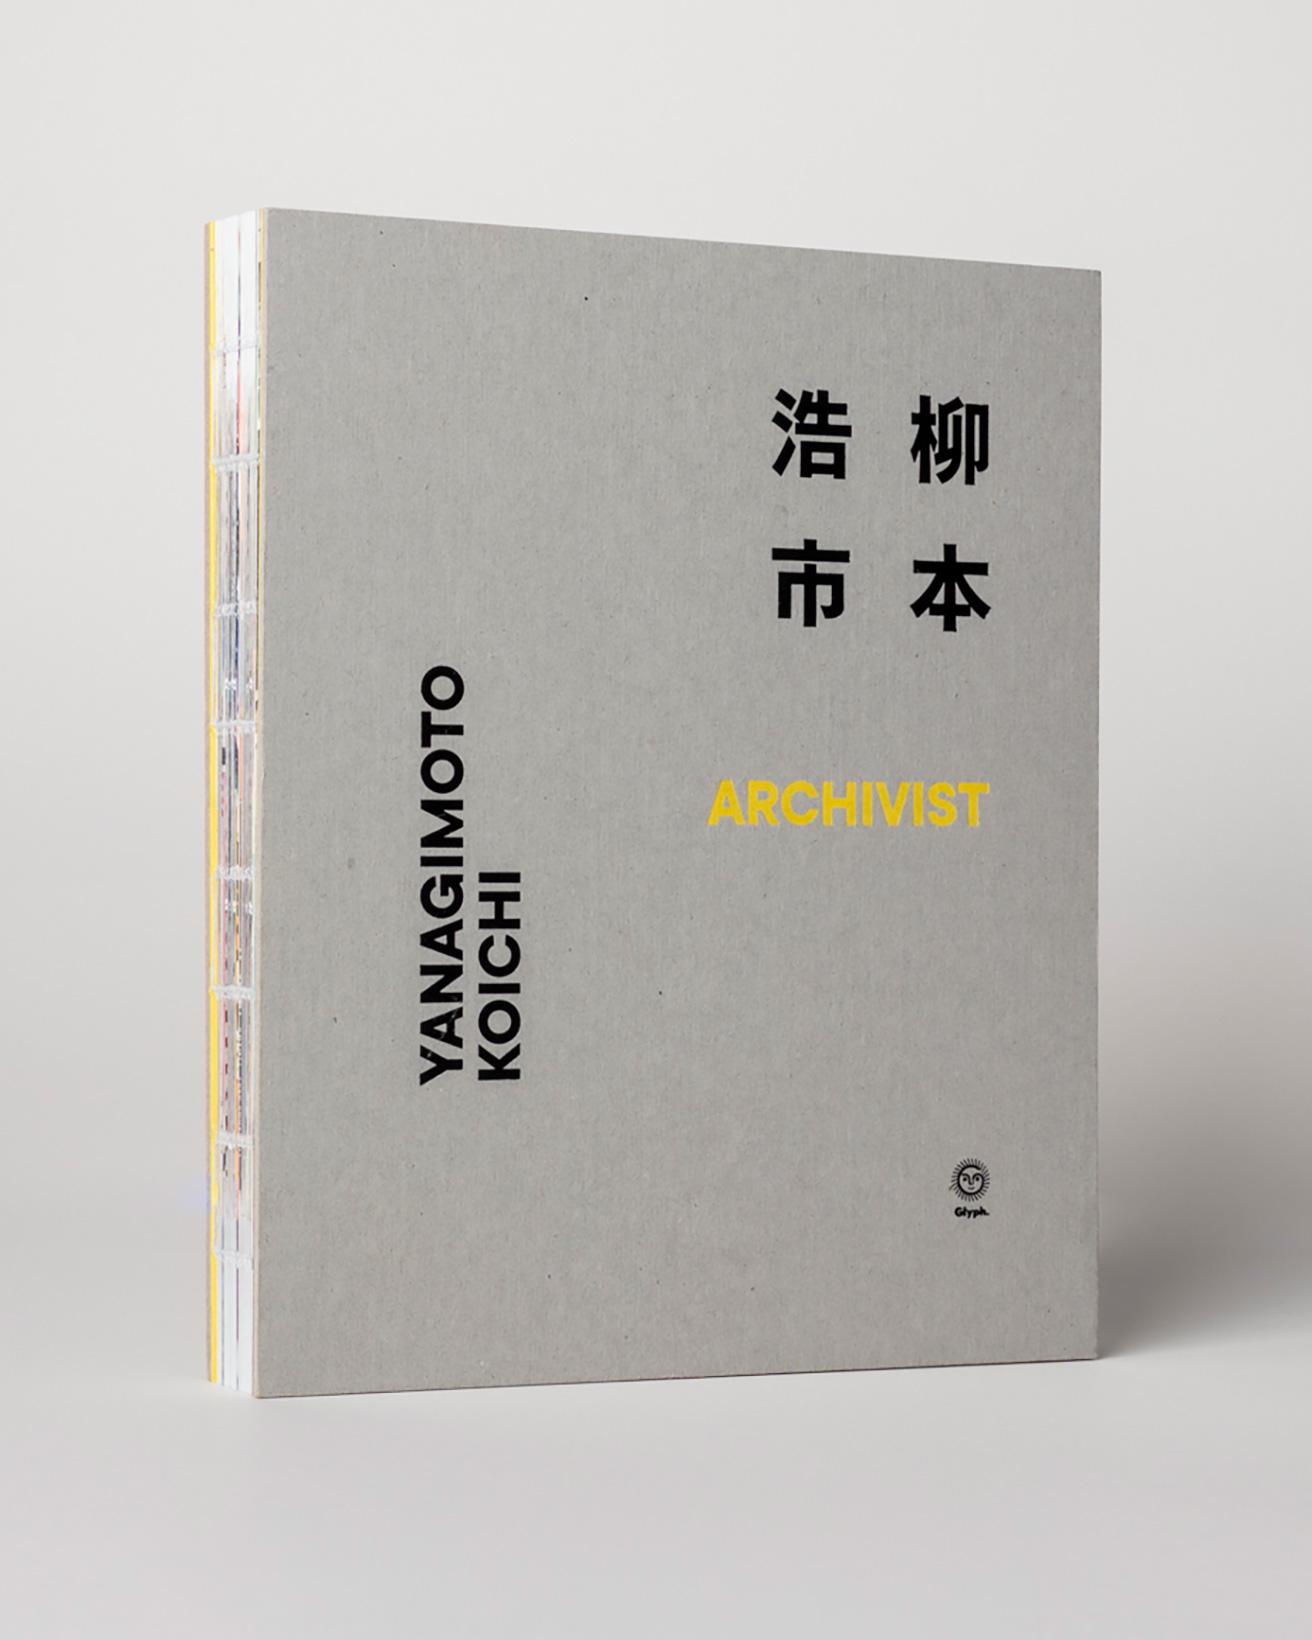 『柳本浩市 ARCHIVIST』は、〈Playmountain〉や〈DELFONICS 大阪〉などの全国の取扱店舗にて販売中。4,400円。